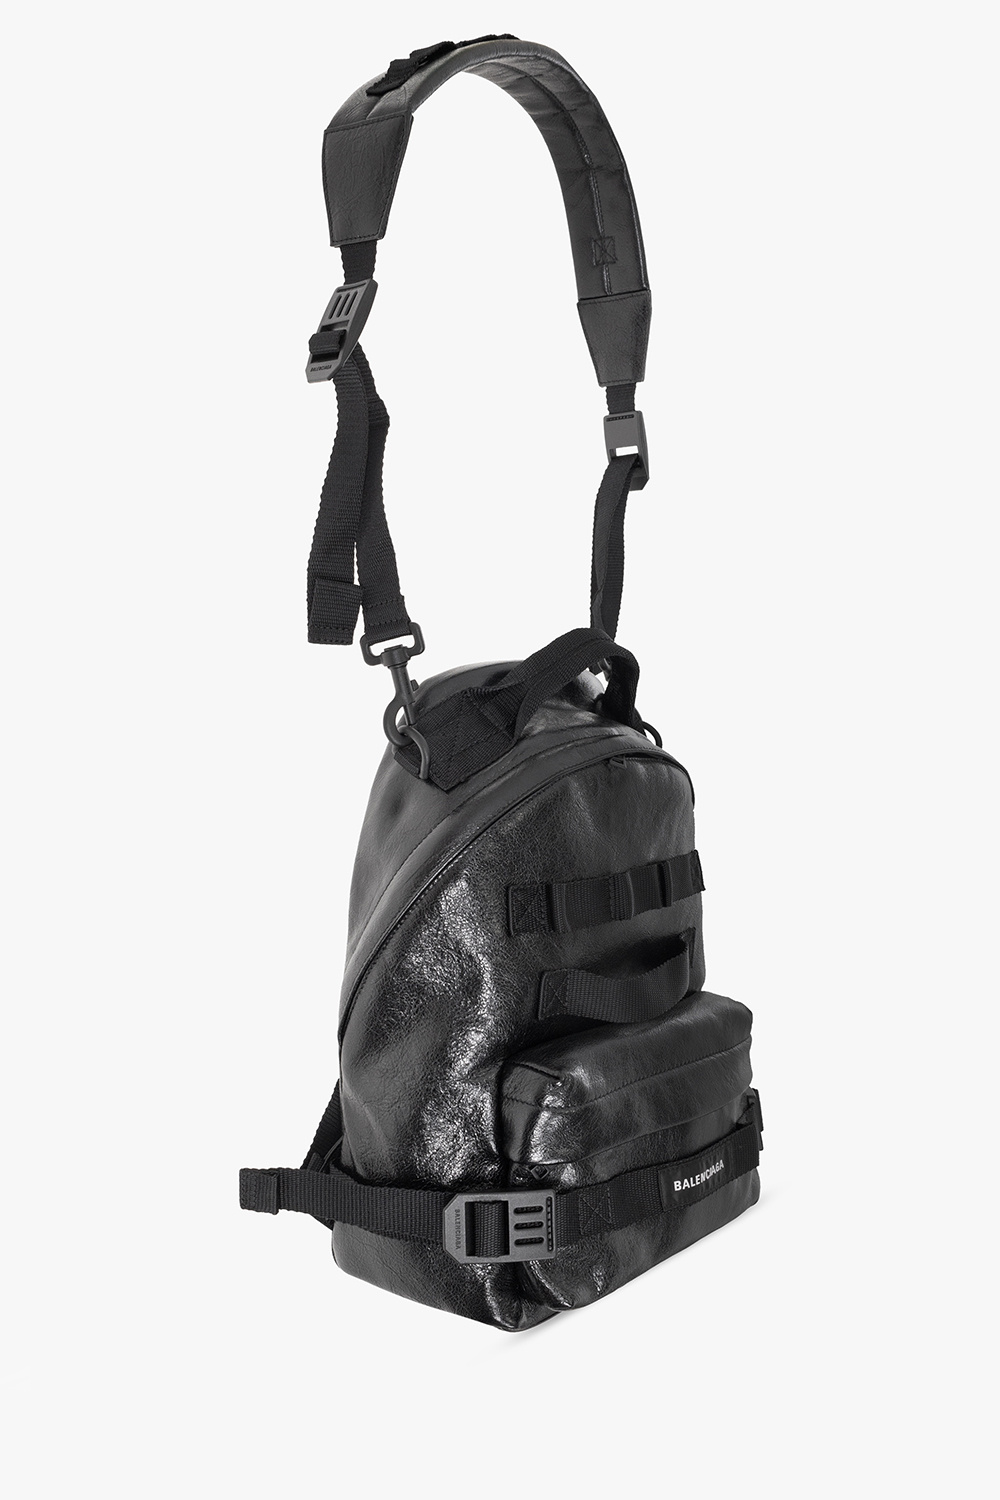 Balenciaga ‘Army Small’ BCA backpack